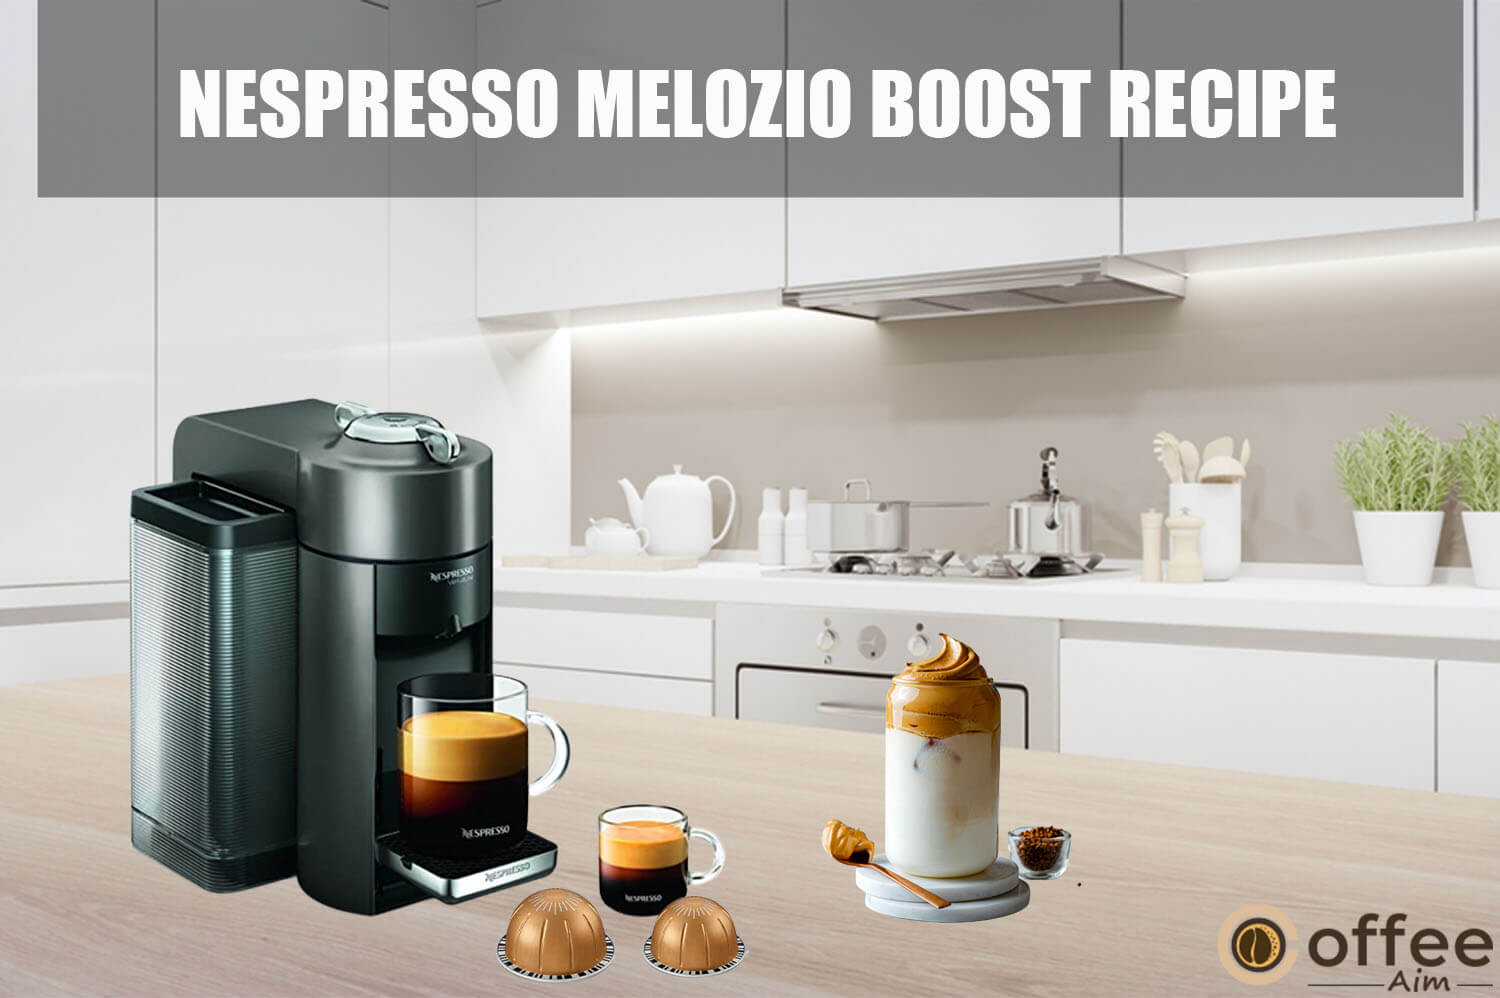 Featured image for the article "Nespresso Melozio Boost Recipe"